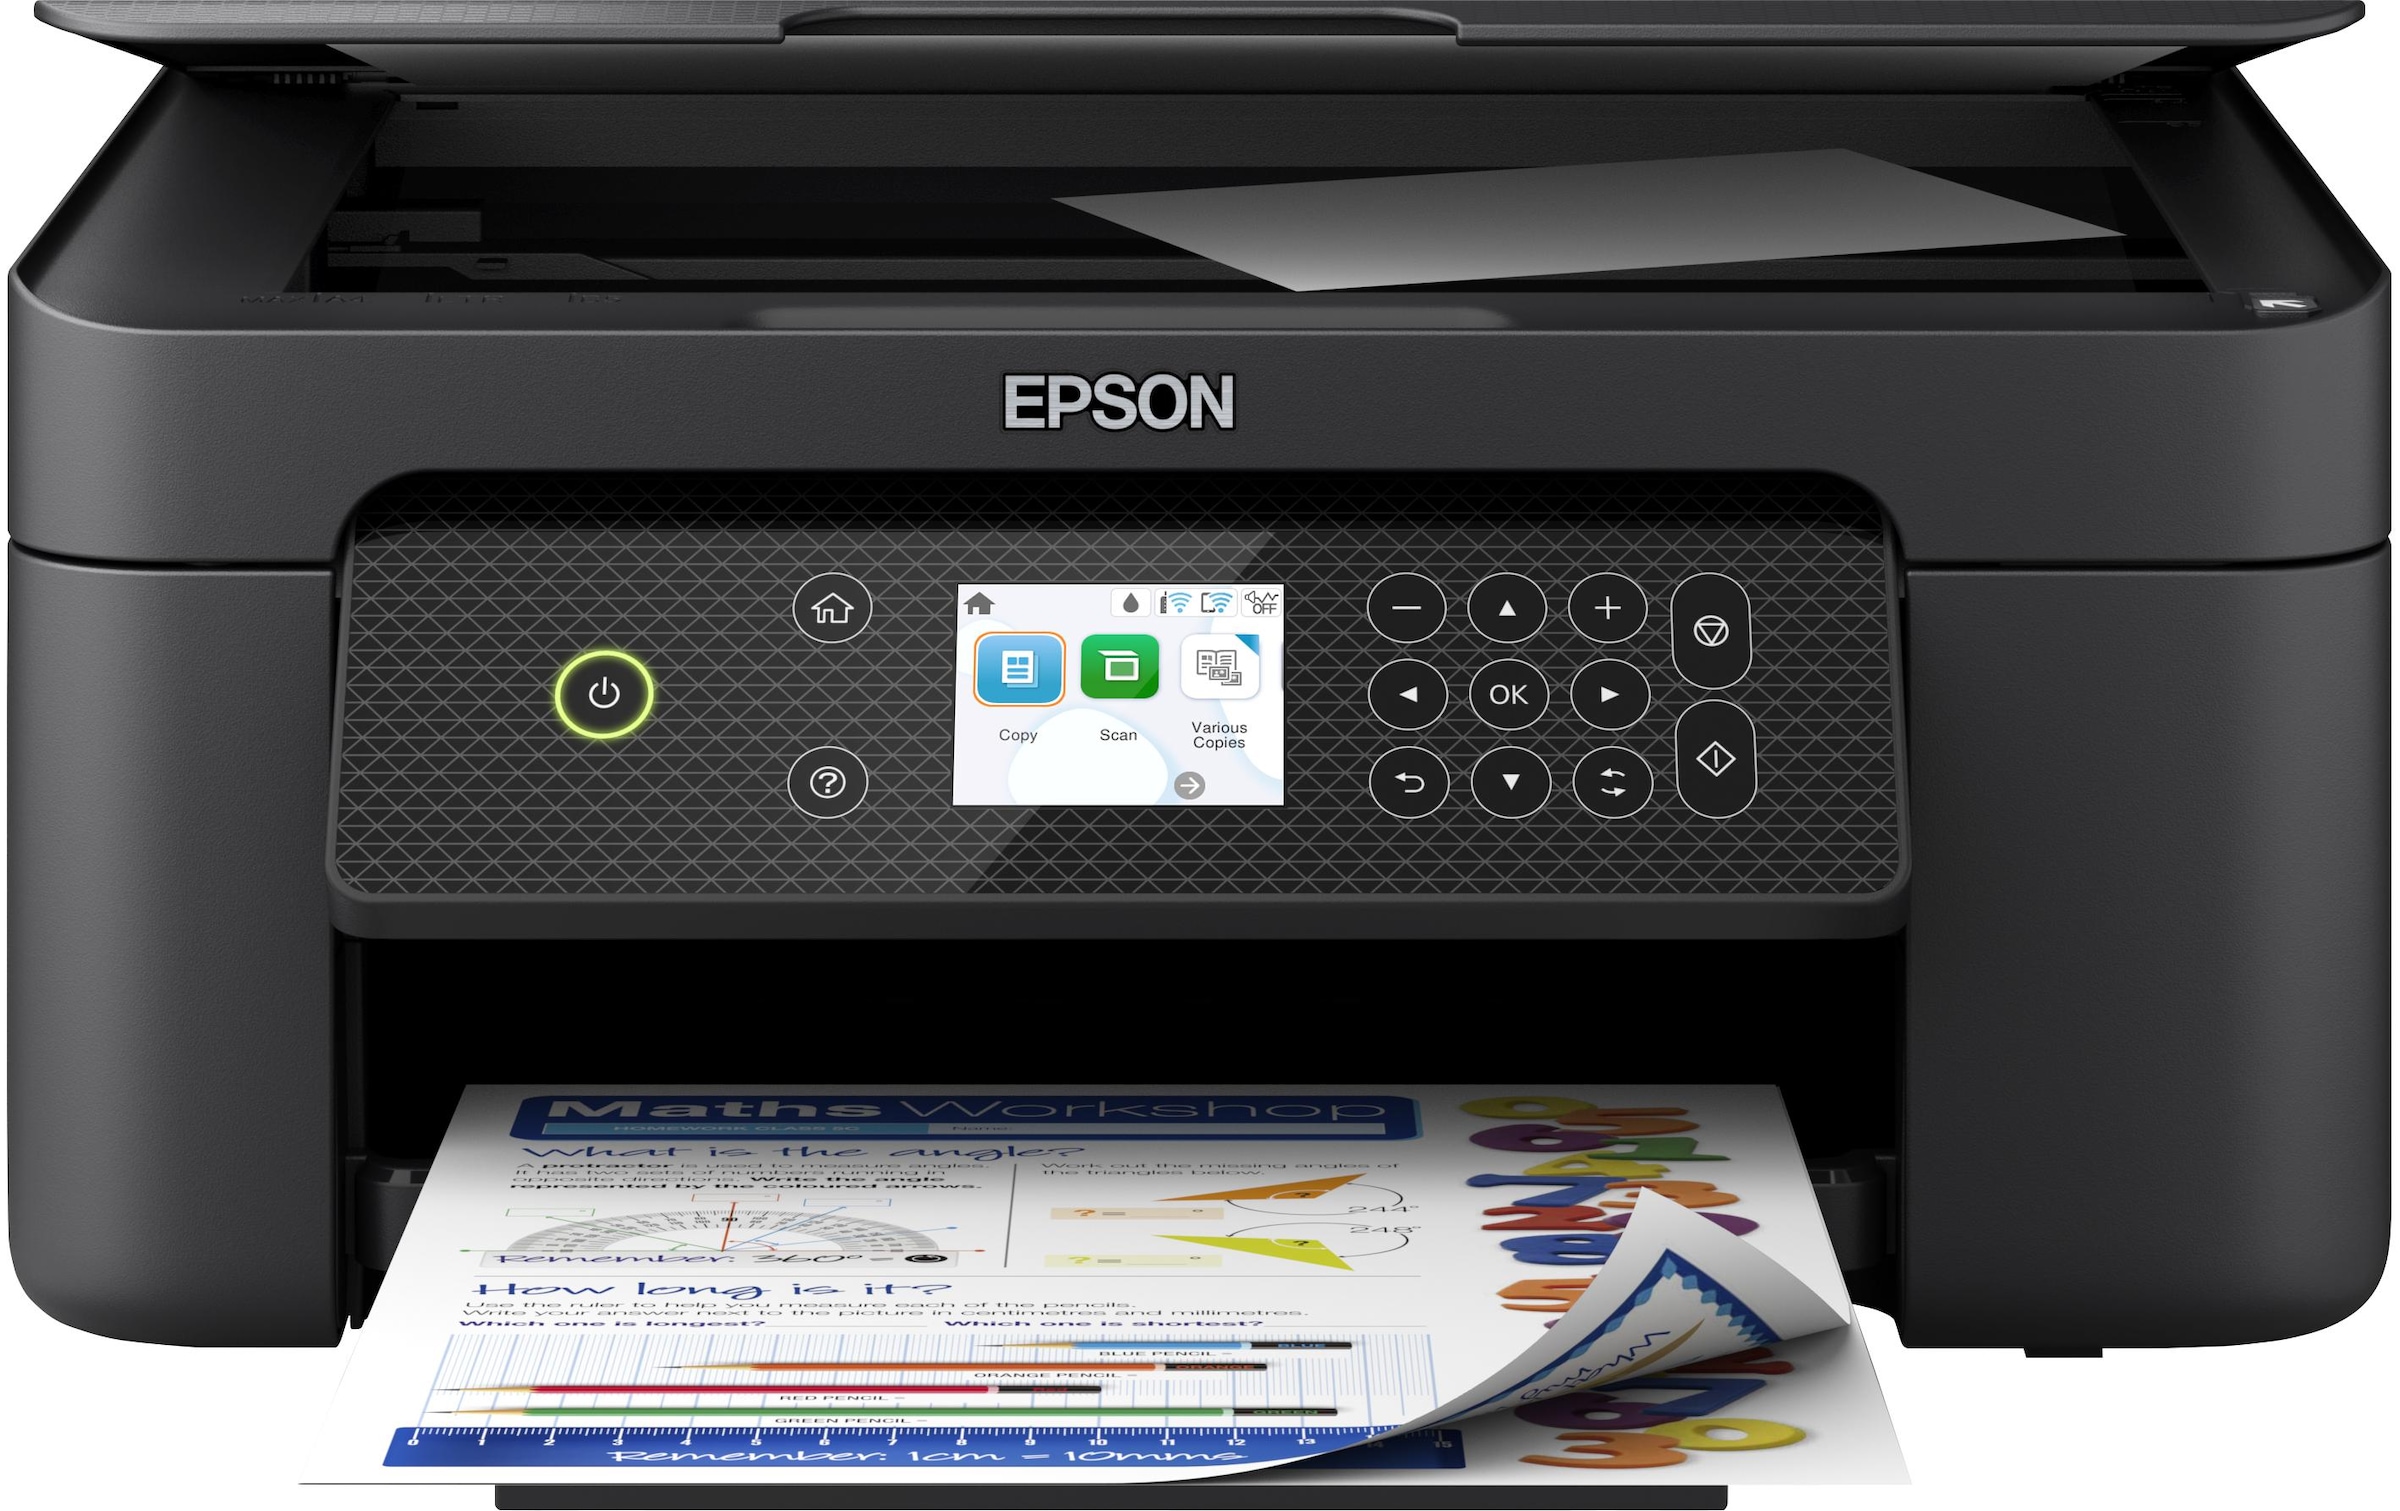 Multifunktionsdrucker »Epson Expression Home XP-4200 schwarz«